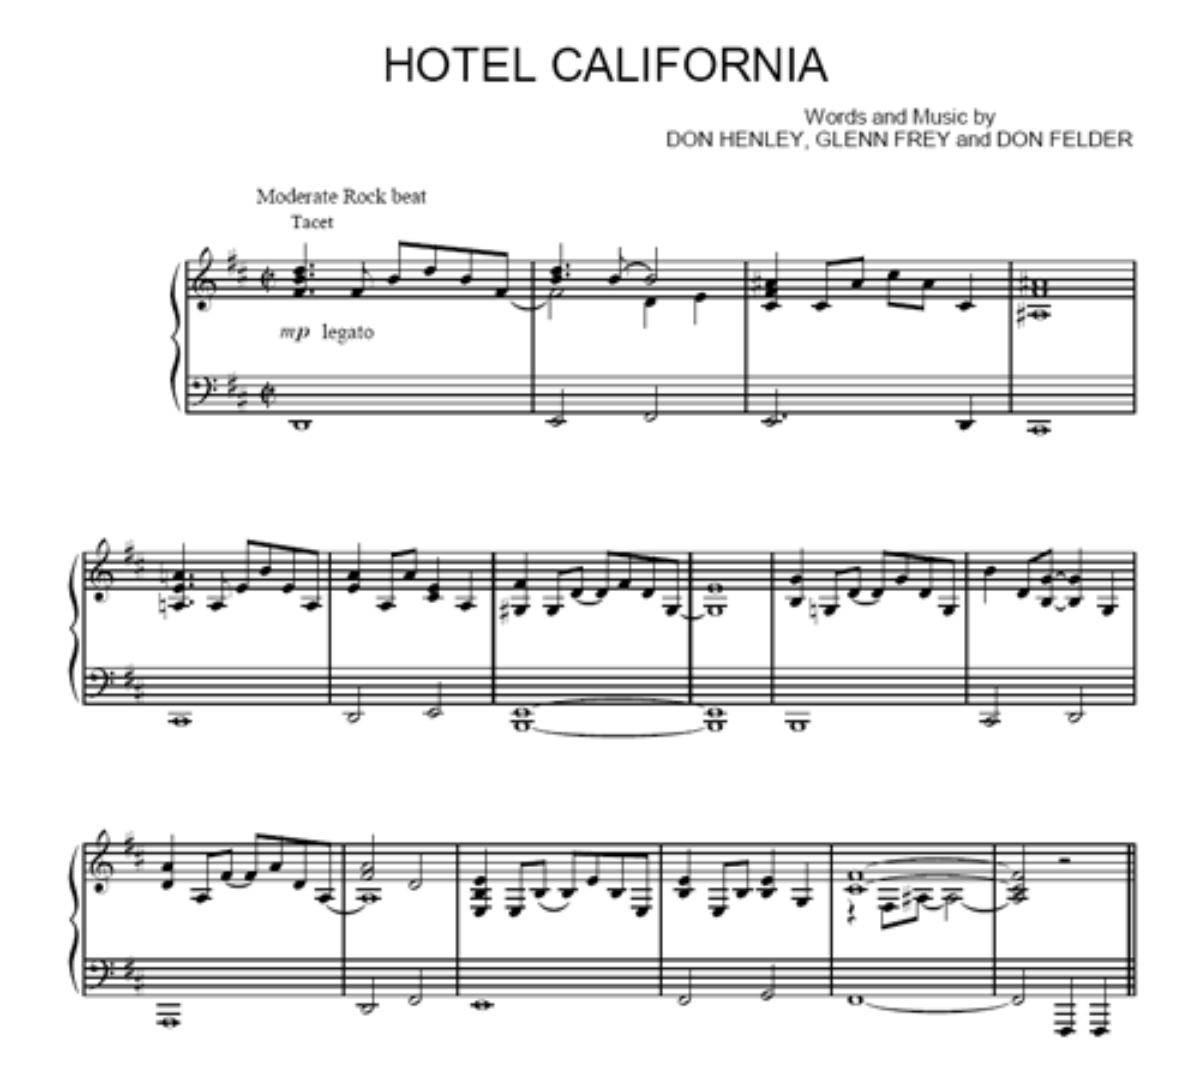 Die Filmmusik zu "Hotel California"